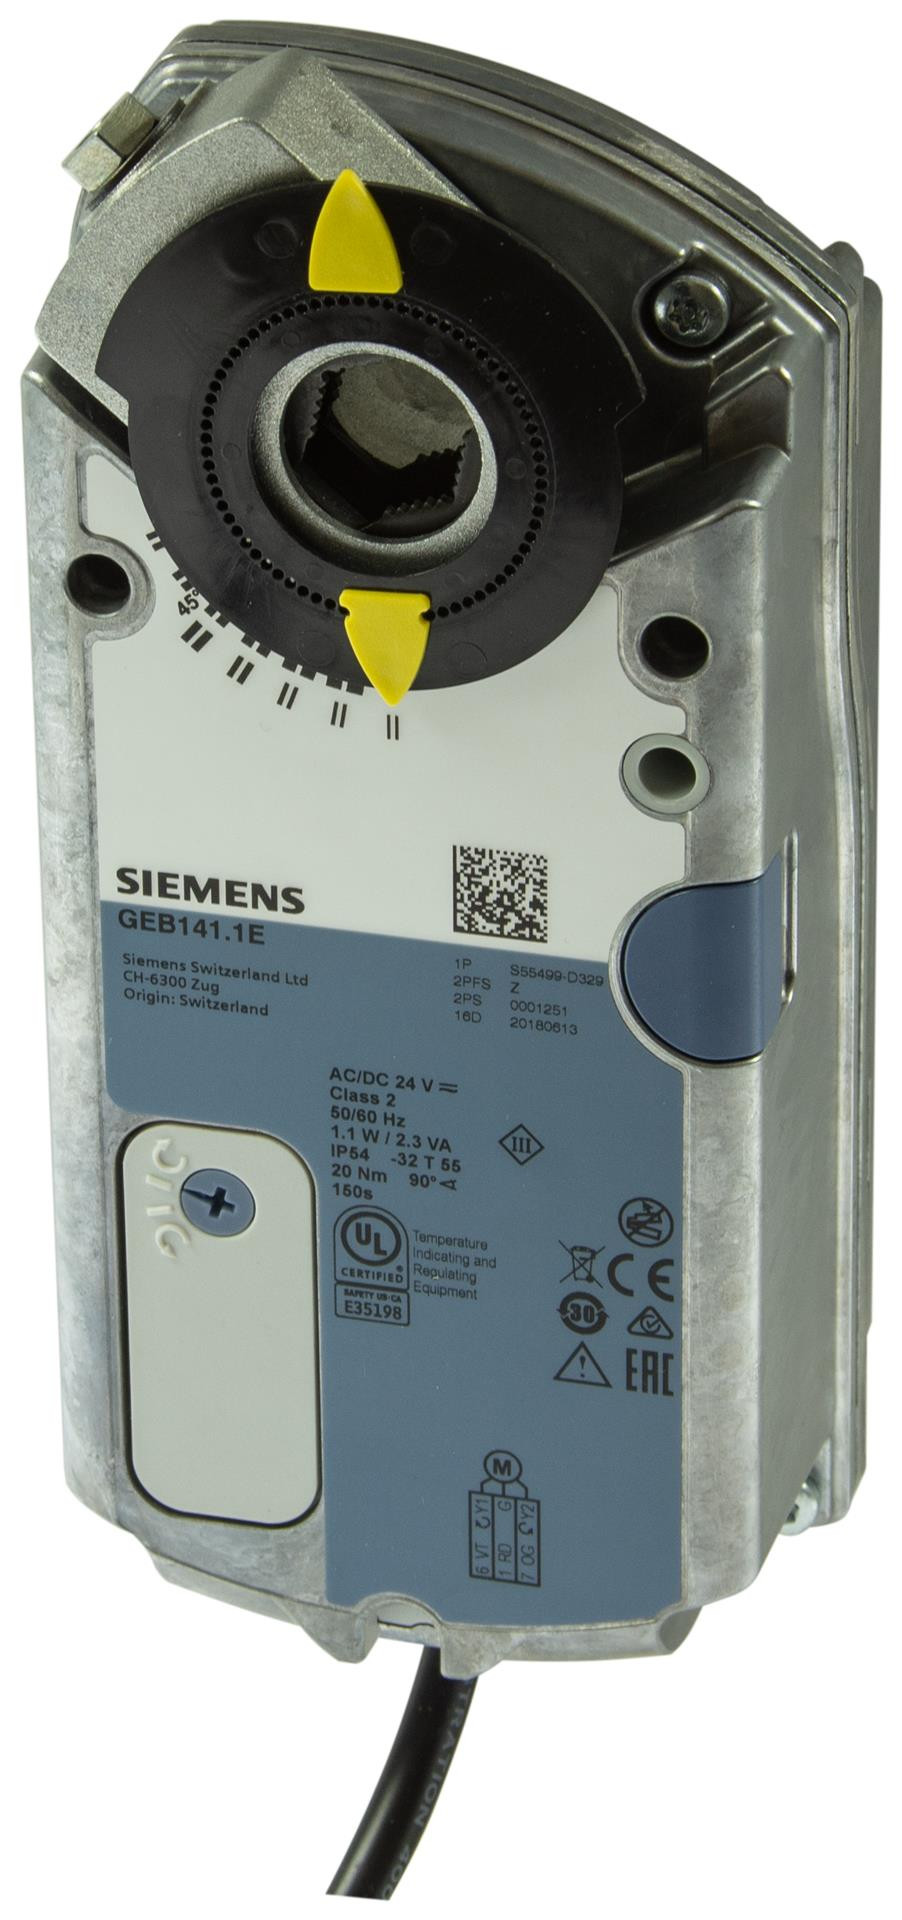 Siemens Luftklappen-Drehantriebe 20 Nm ohne Federrücklauf GEB361.1E